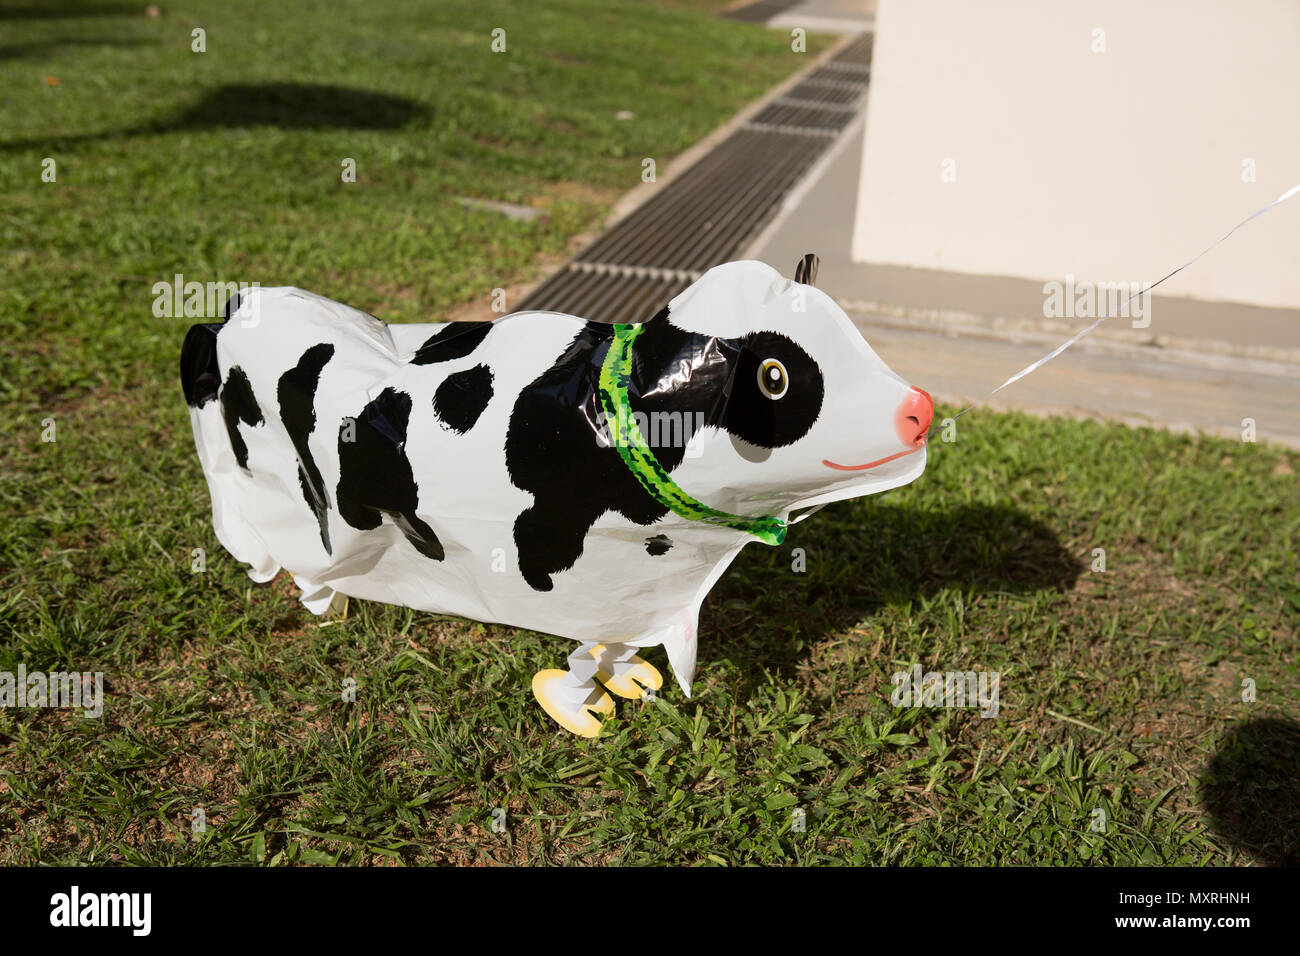 Ballon flottant d'une vache noire et blanche avec pattes Banque D'Images